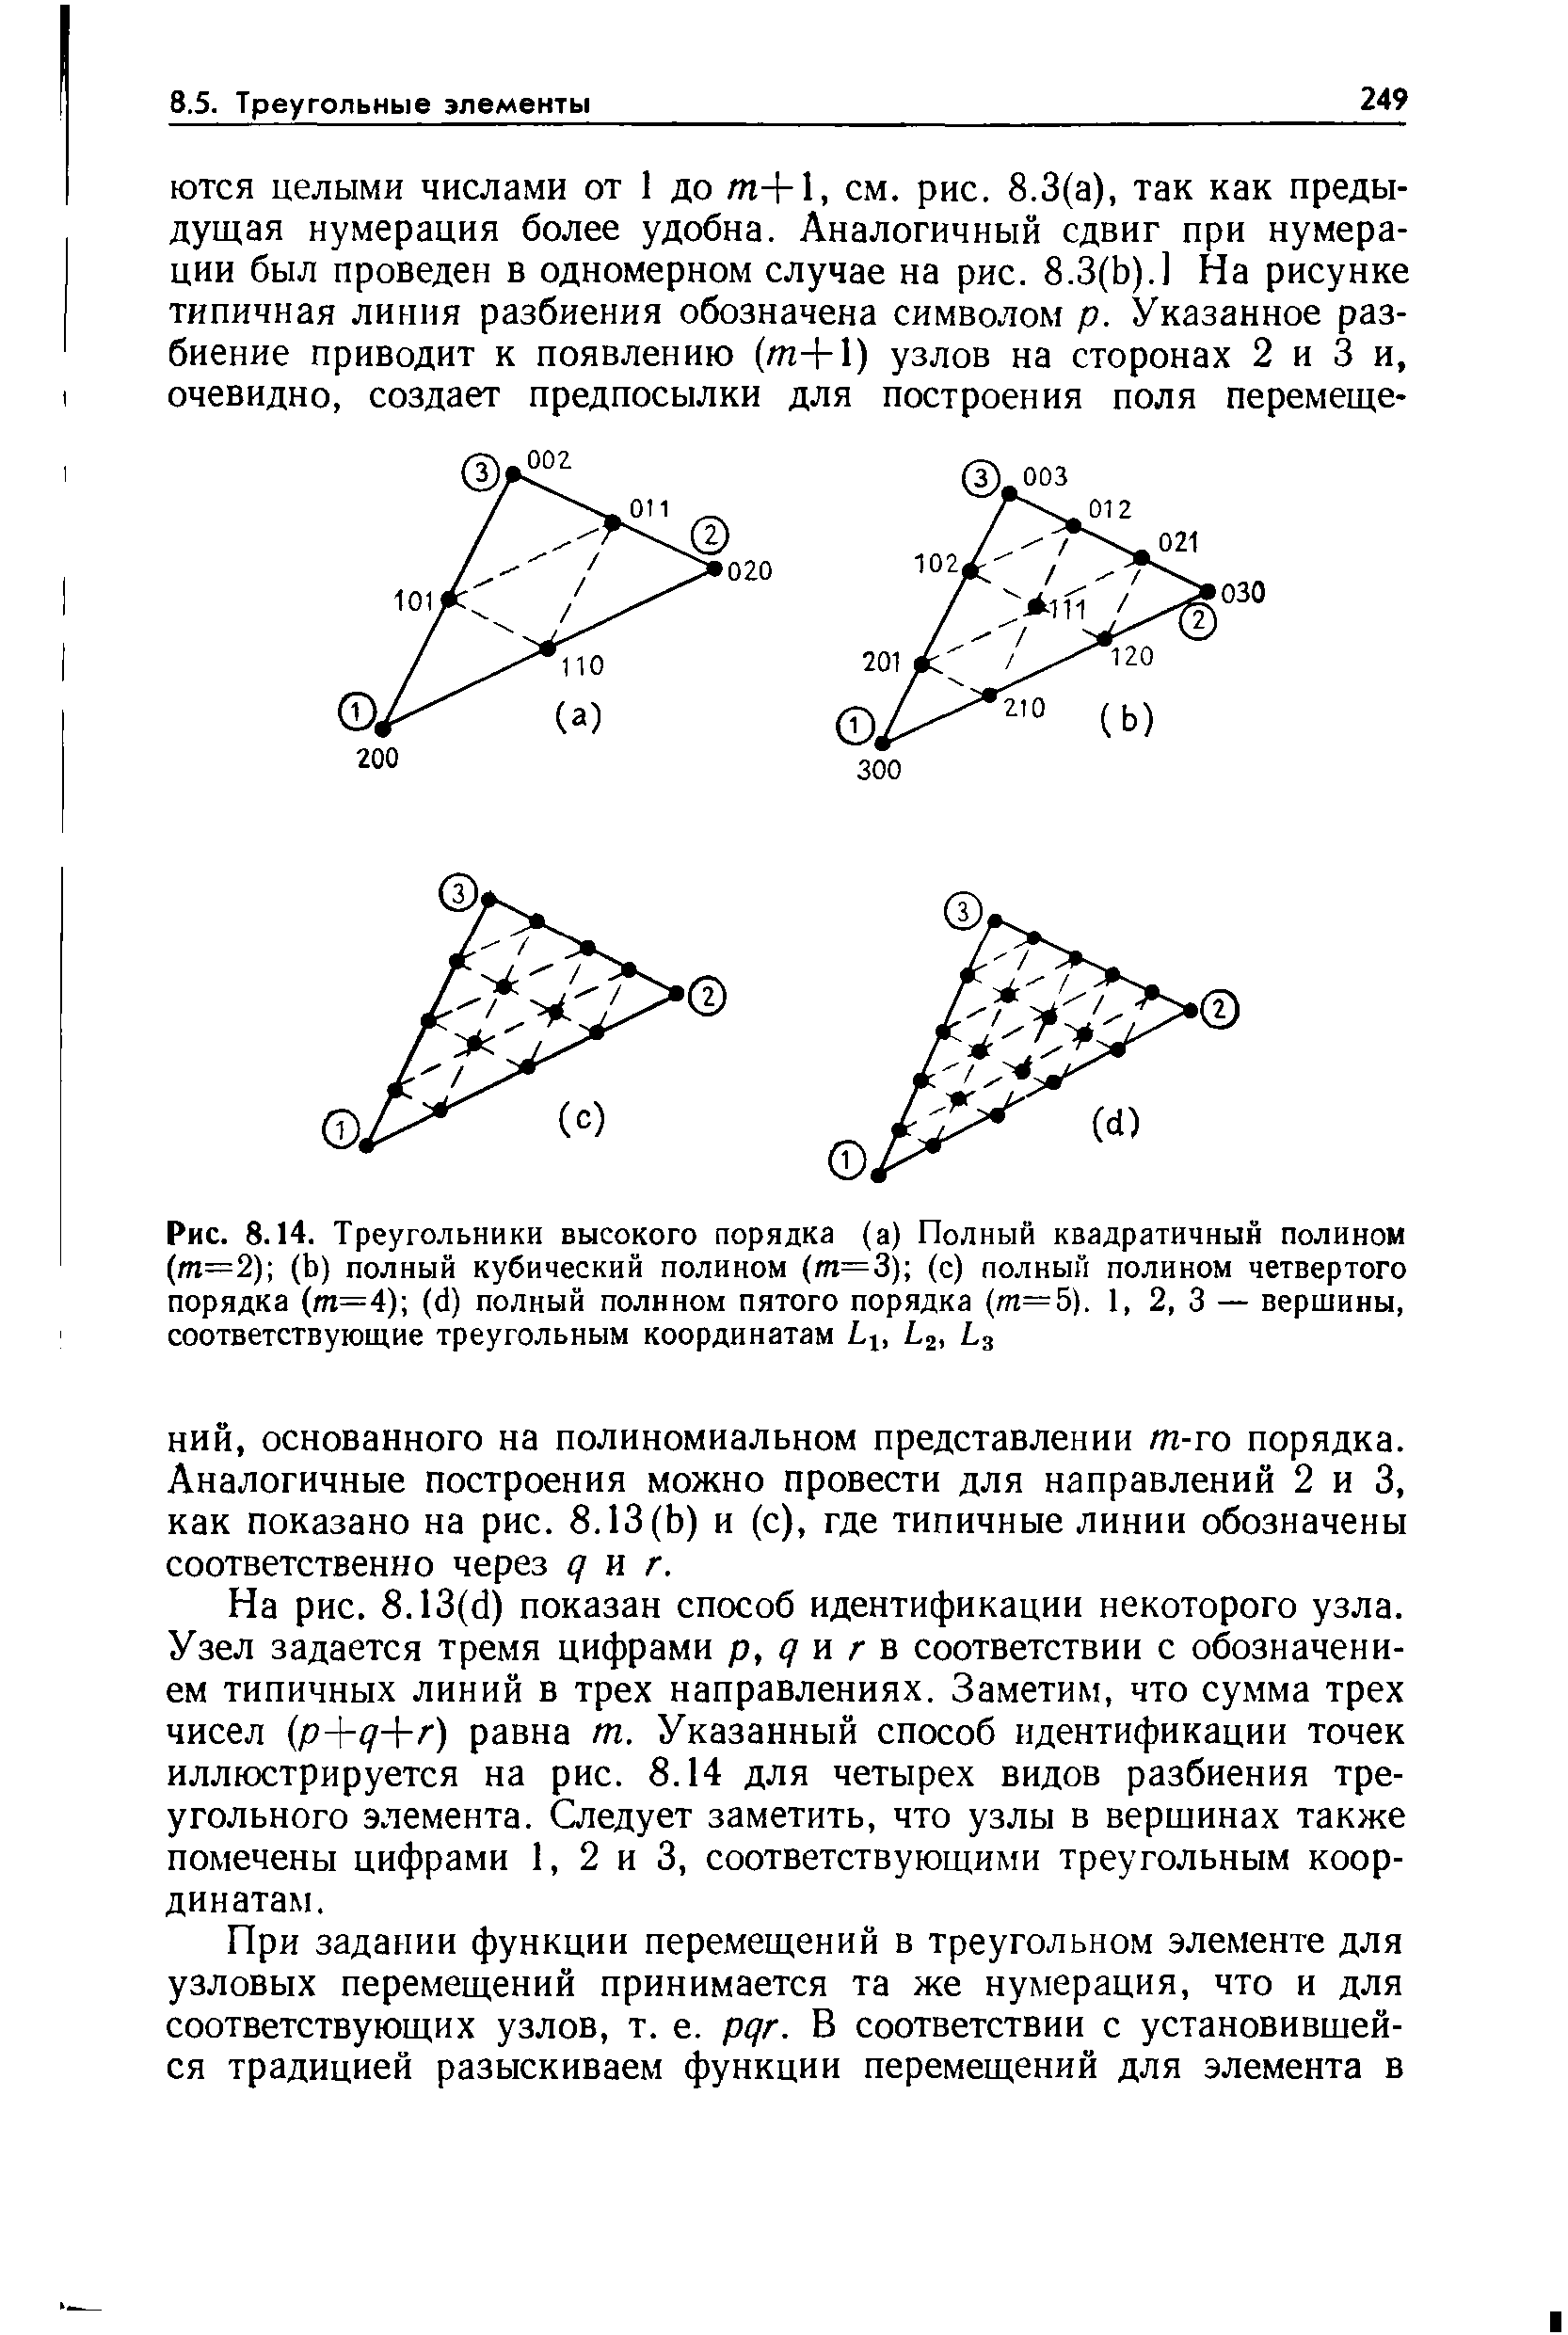 Рис. 8.14. Треугольники высокого порядка (а) Полный квадратичный полином (т=2) (Ь) полный кубический полином (т=3) (с) полный полином четвертого порядка (т=4) ((1) полный полином пятого порядка (т=5). 1, 2, 3 — вершины, соответствующие треугольным координатам 1 , Ц, 1з
